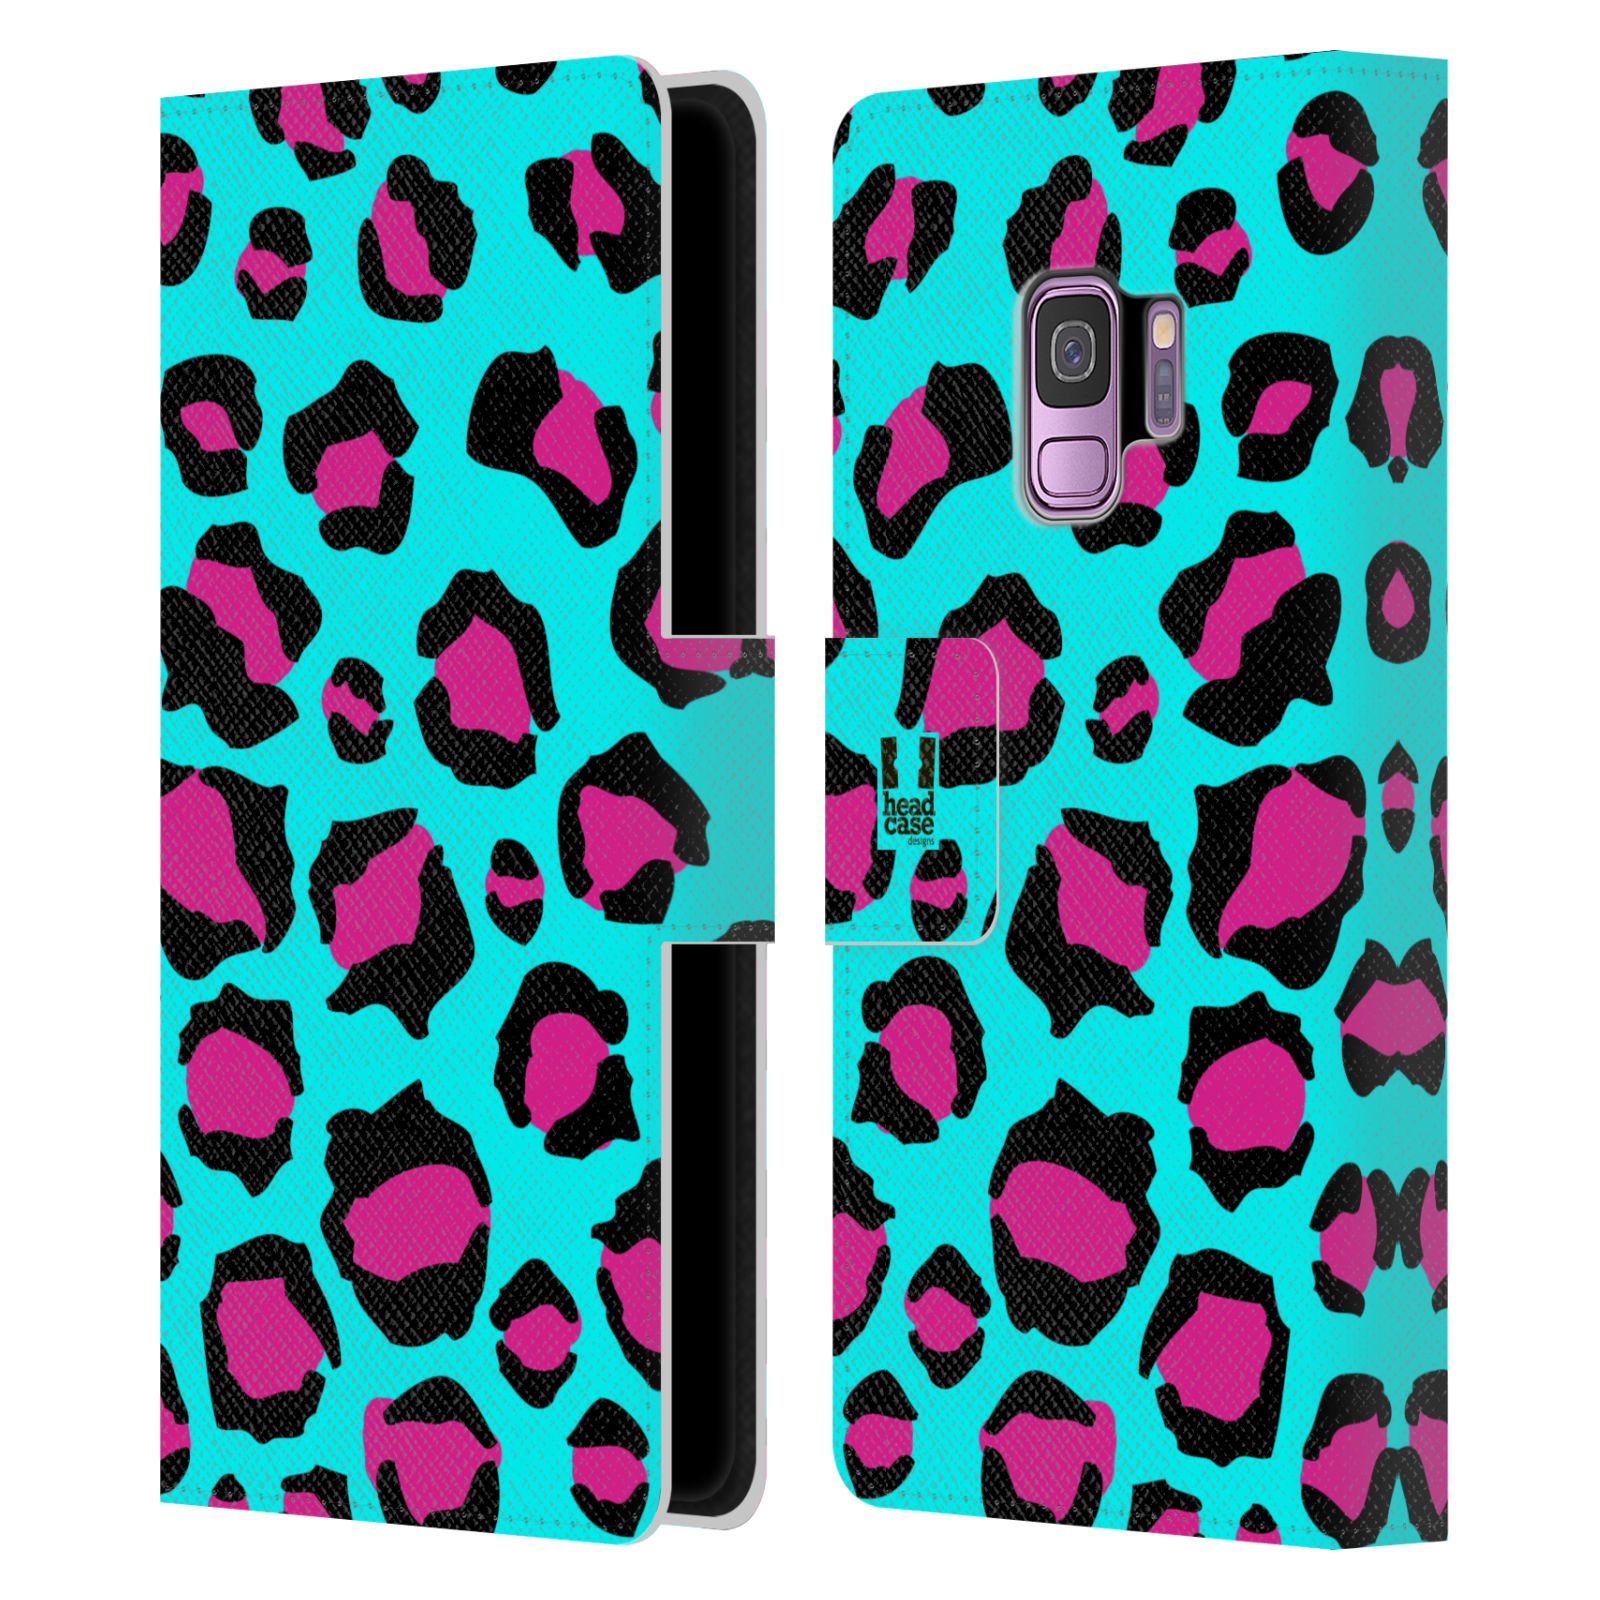 Pouzdro na mobil Samsung Galaxy S9 - HEAD CASE - Magický vzor leopard